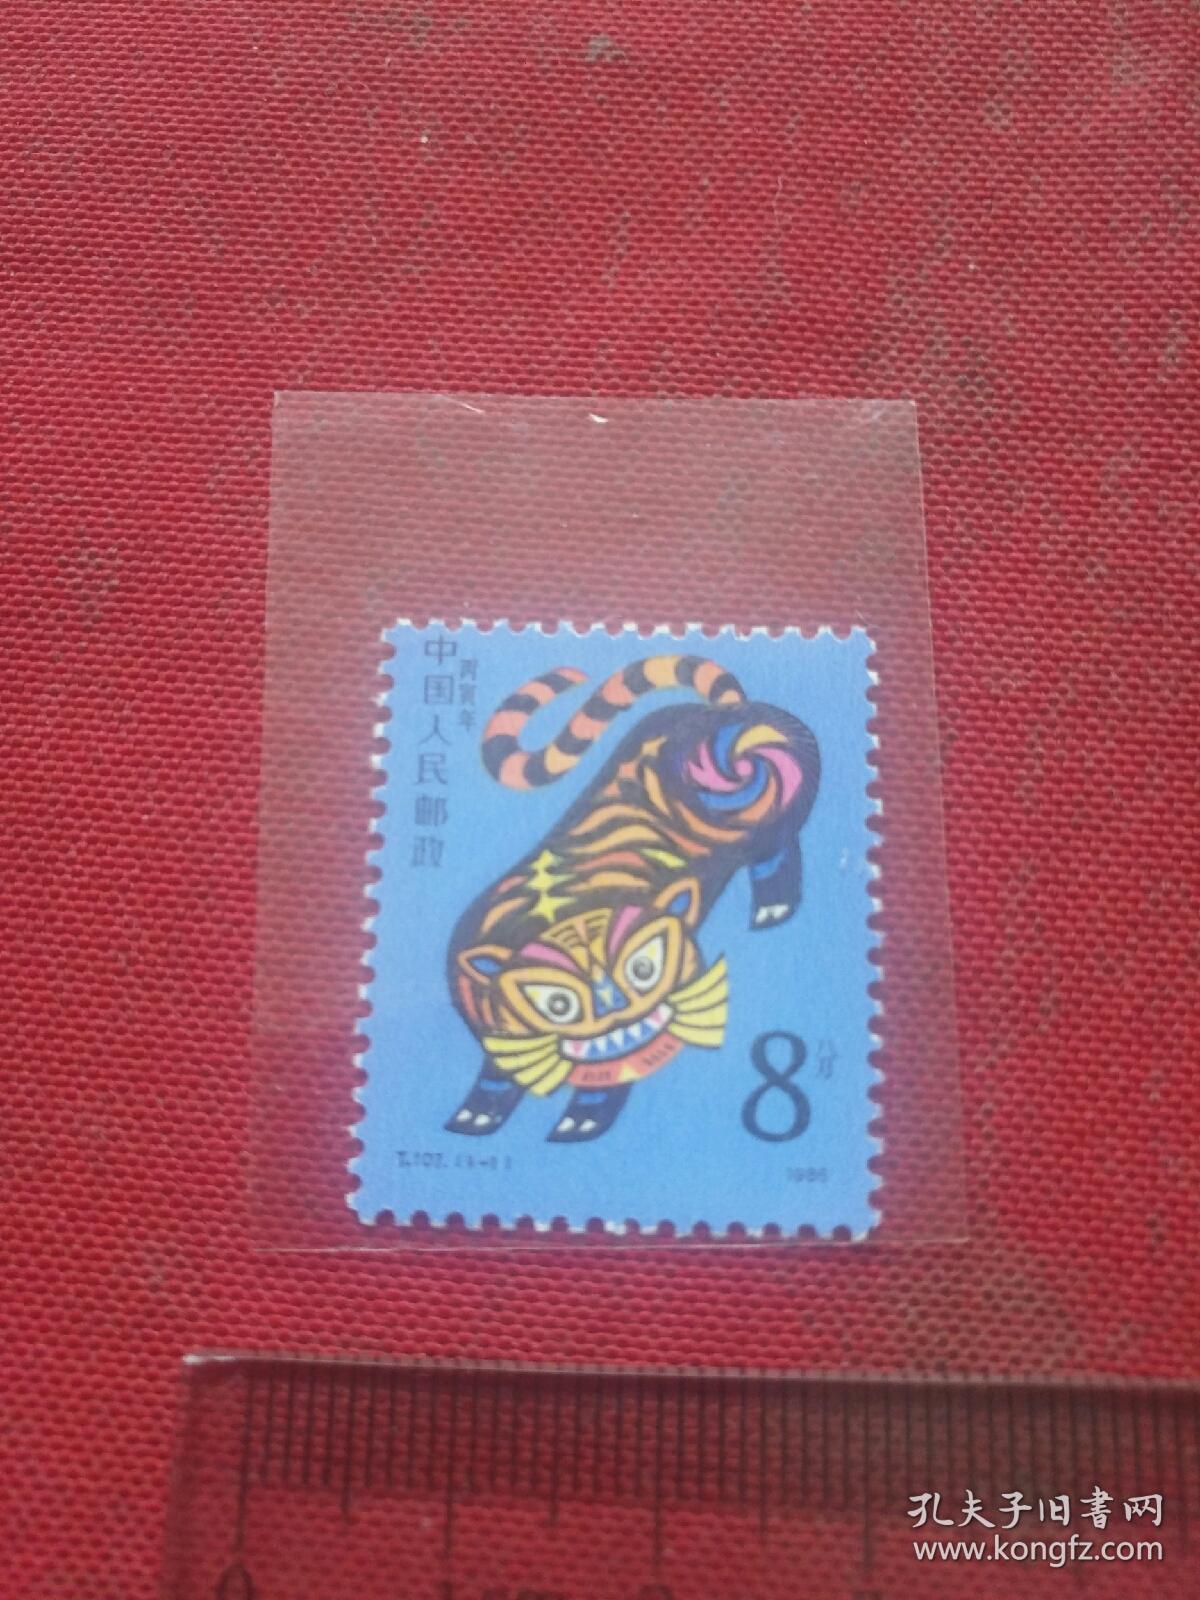 邮票  1986年生肖虎